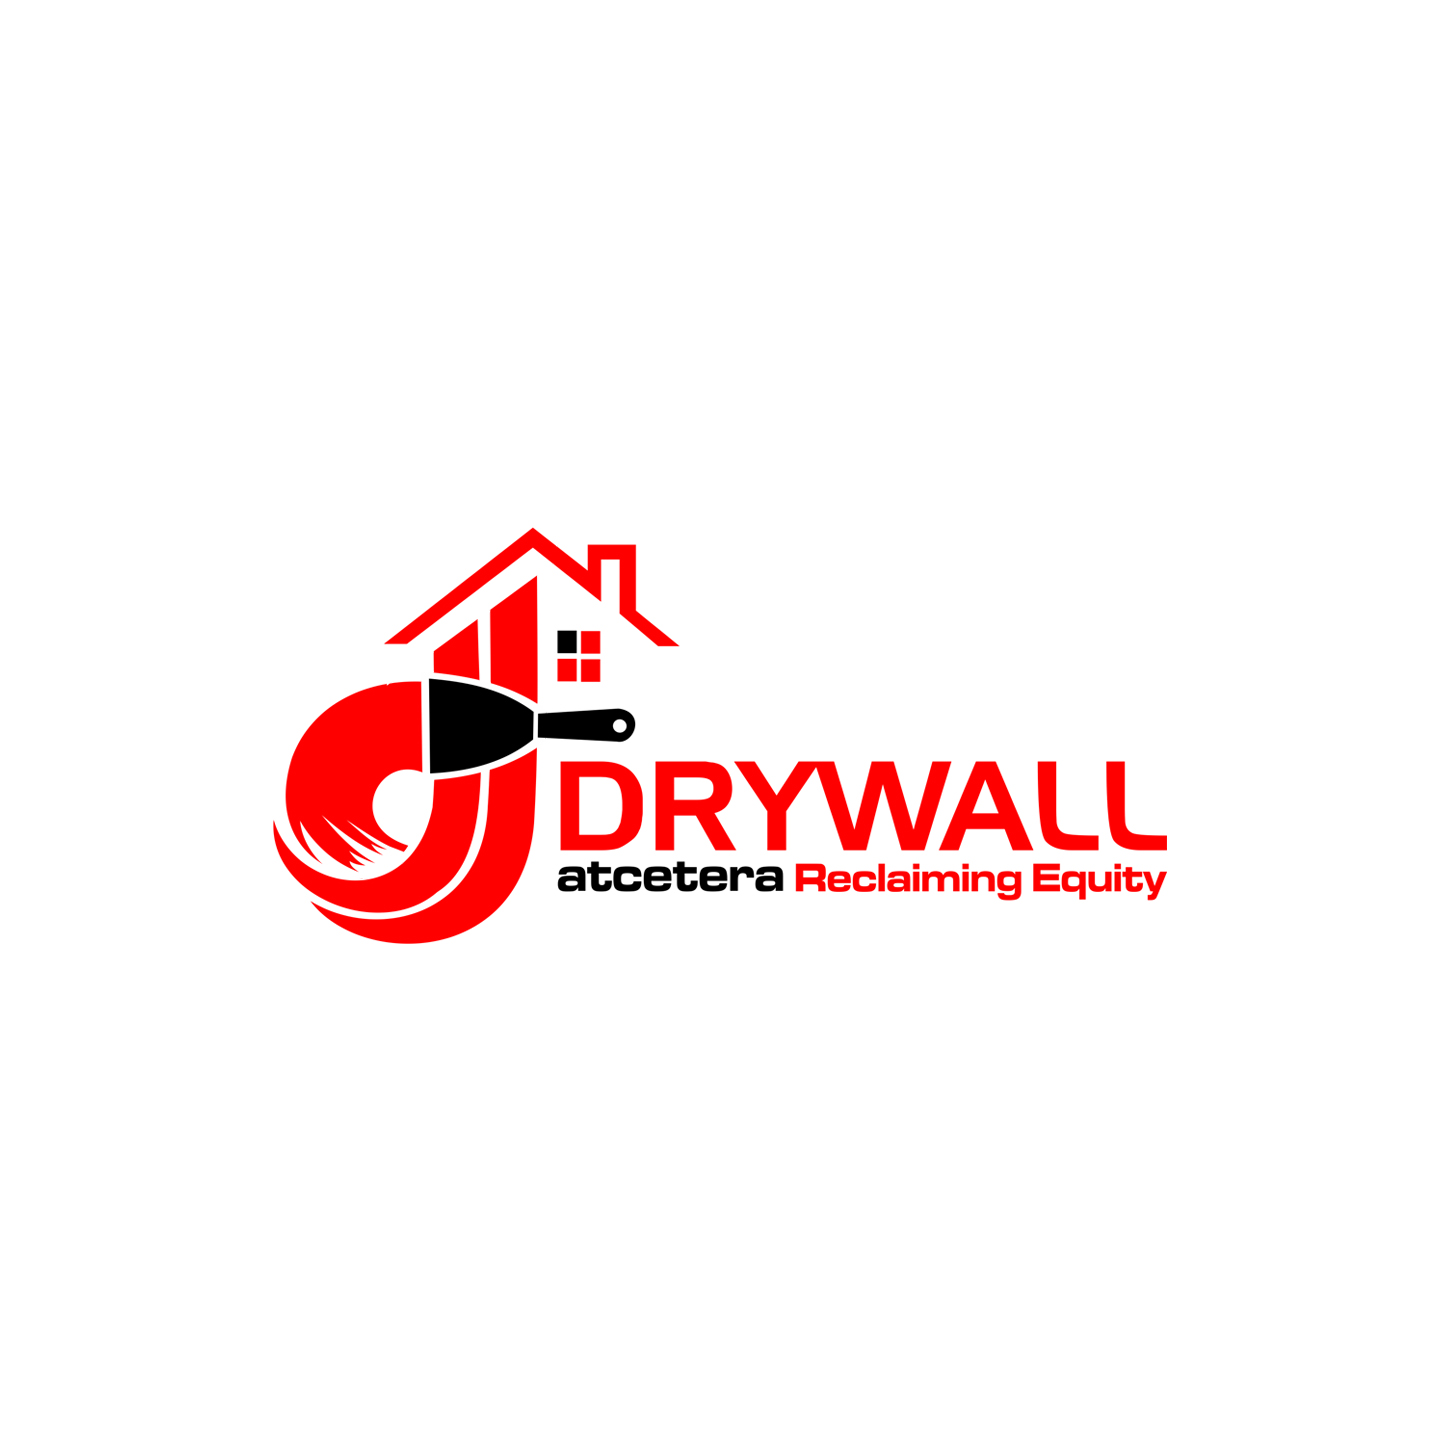 drywall logo ideas 1